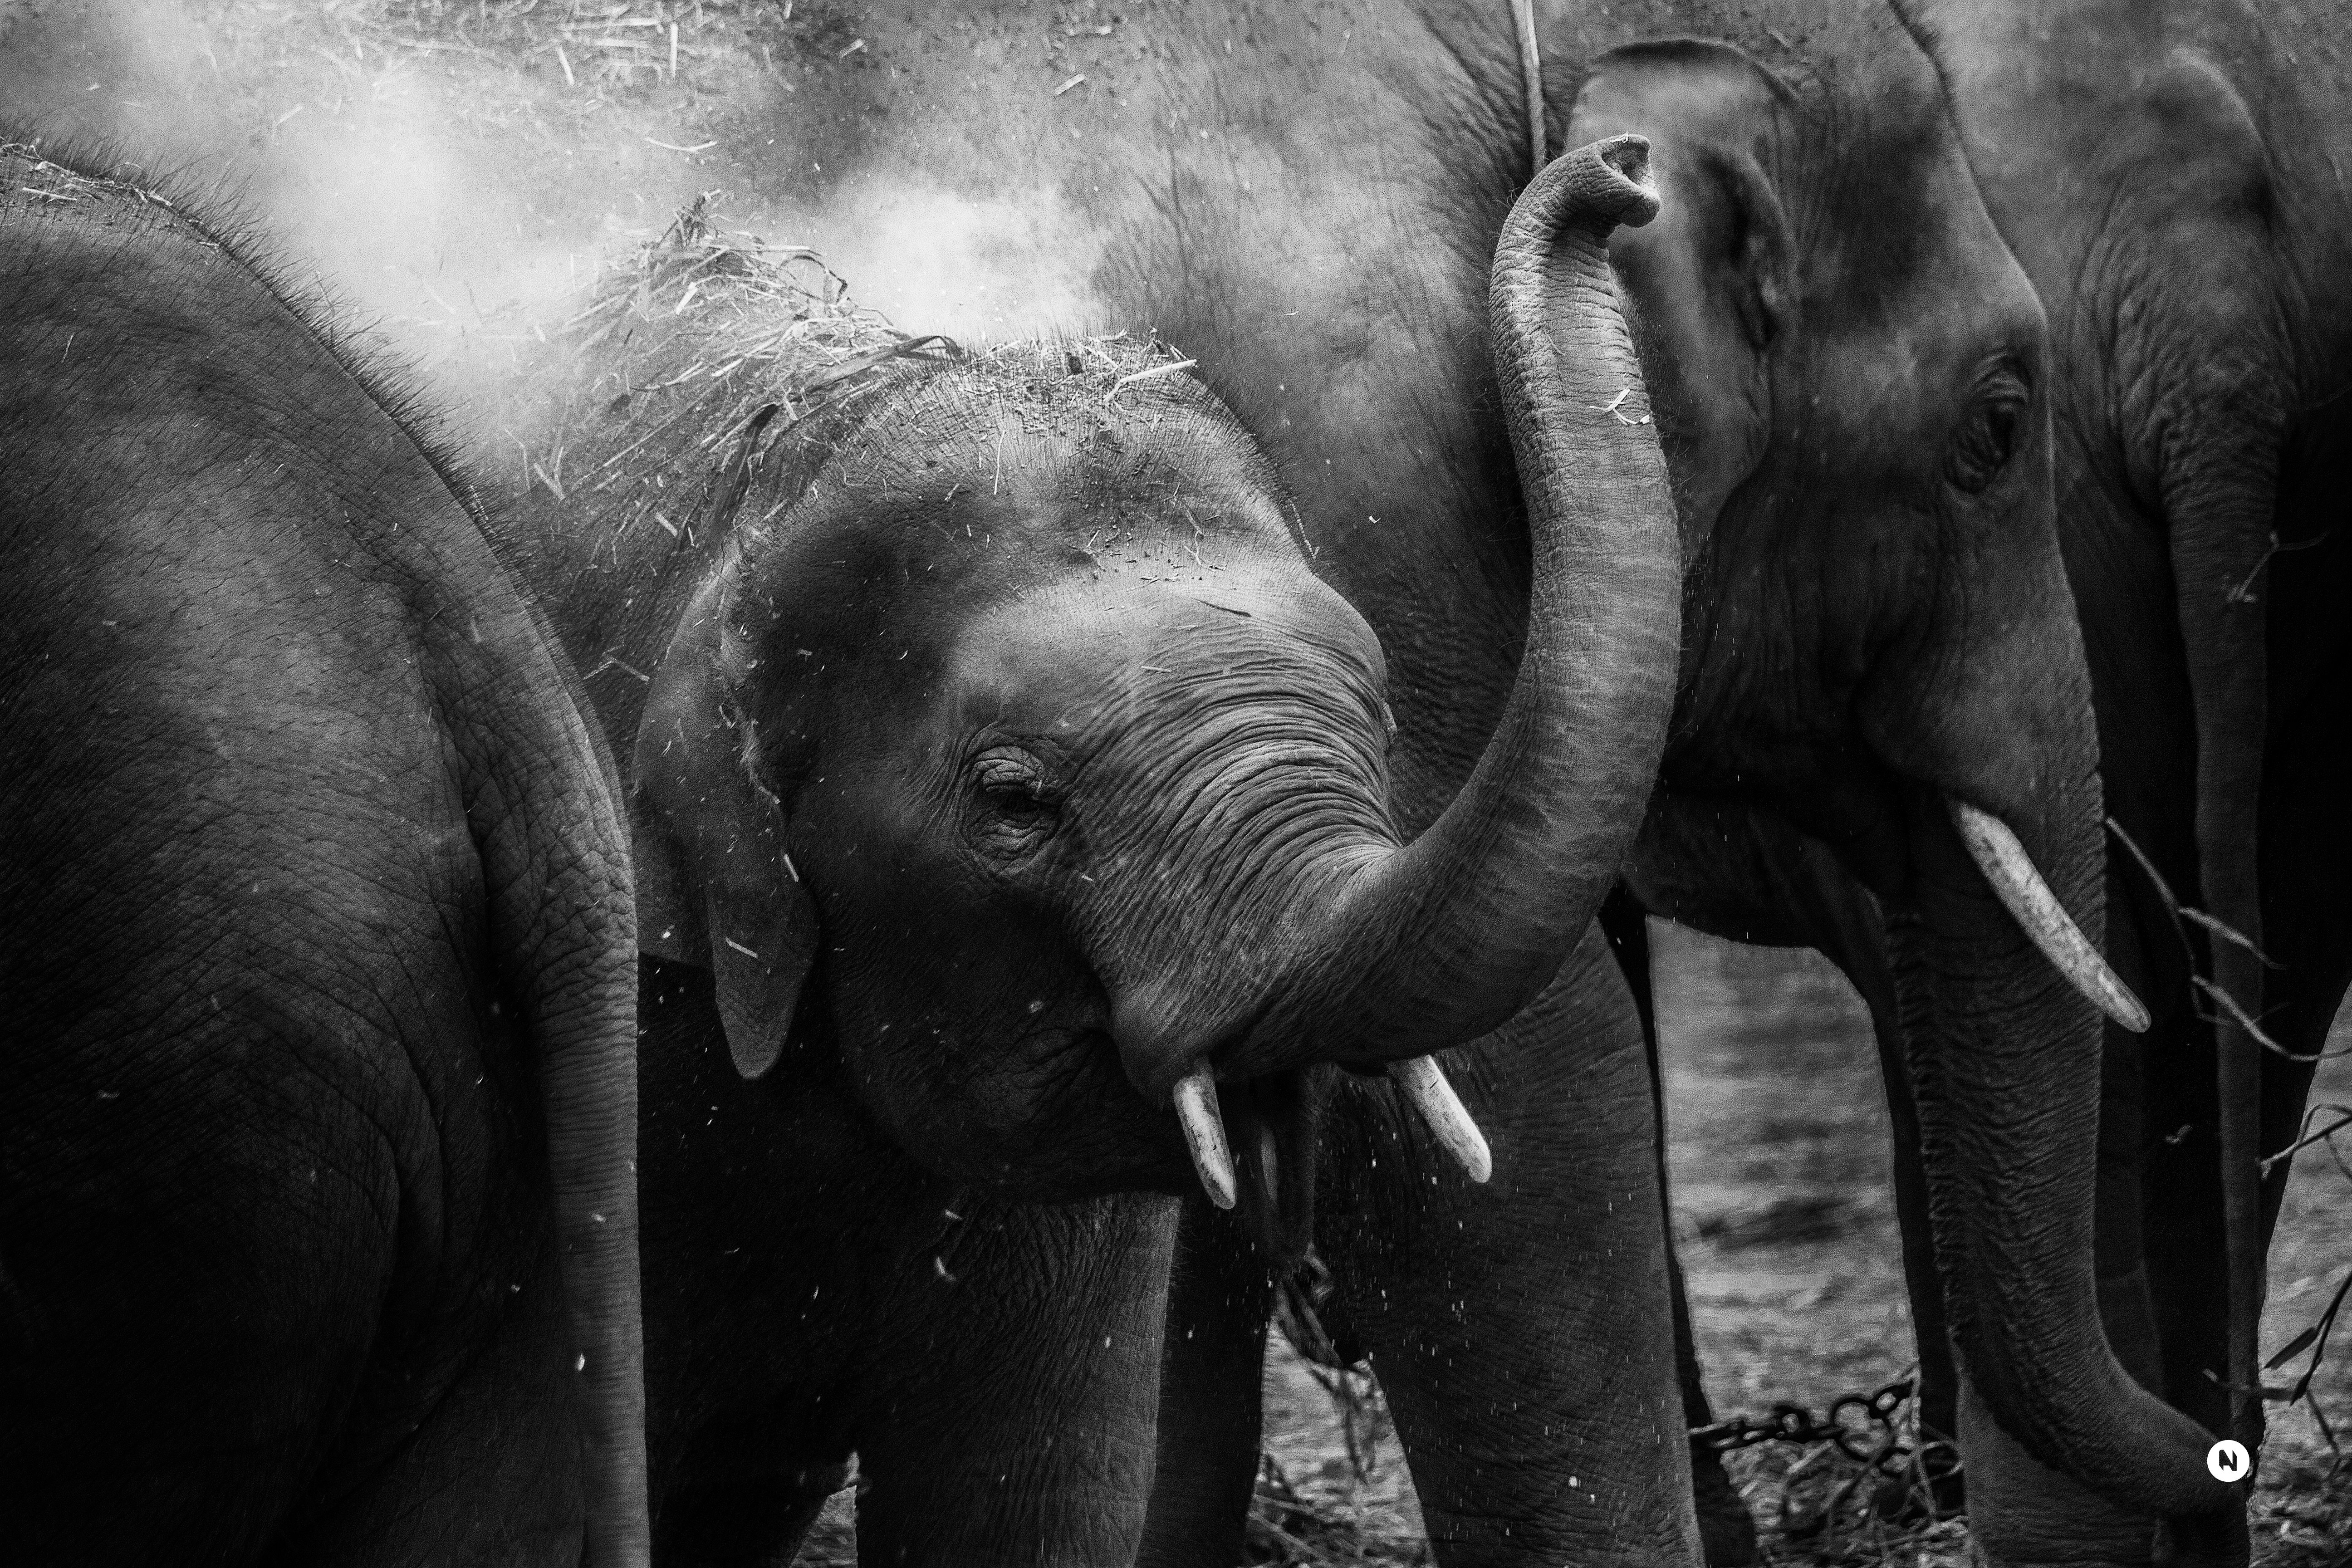 grayscale photo of elephants